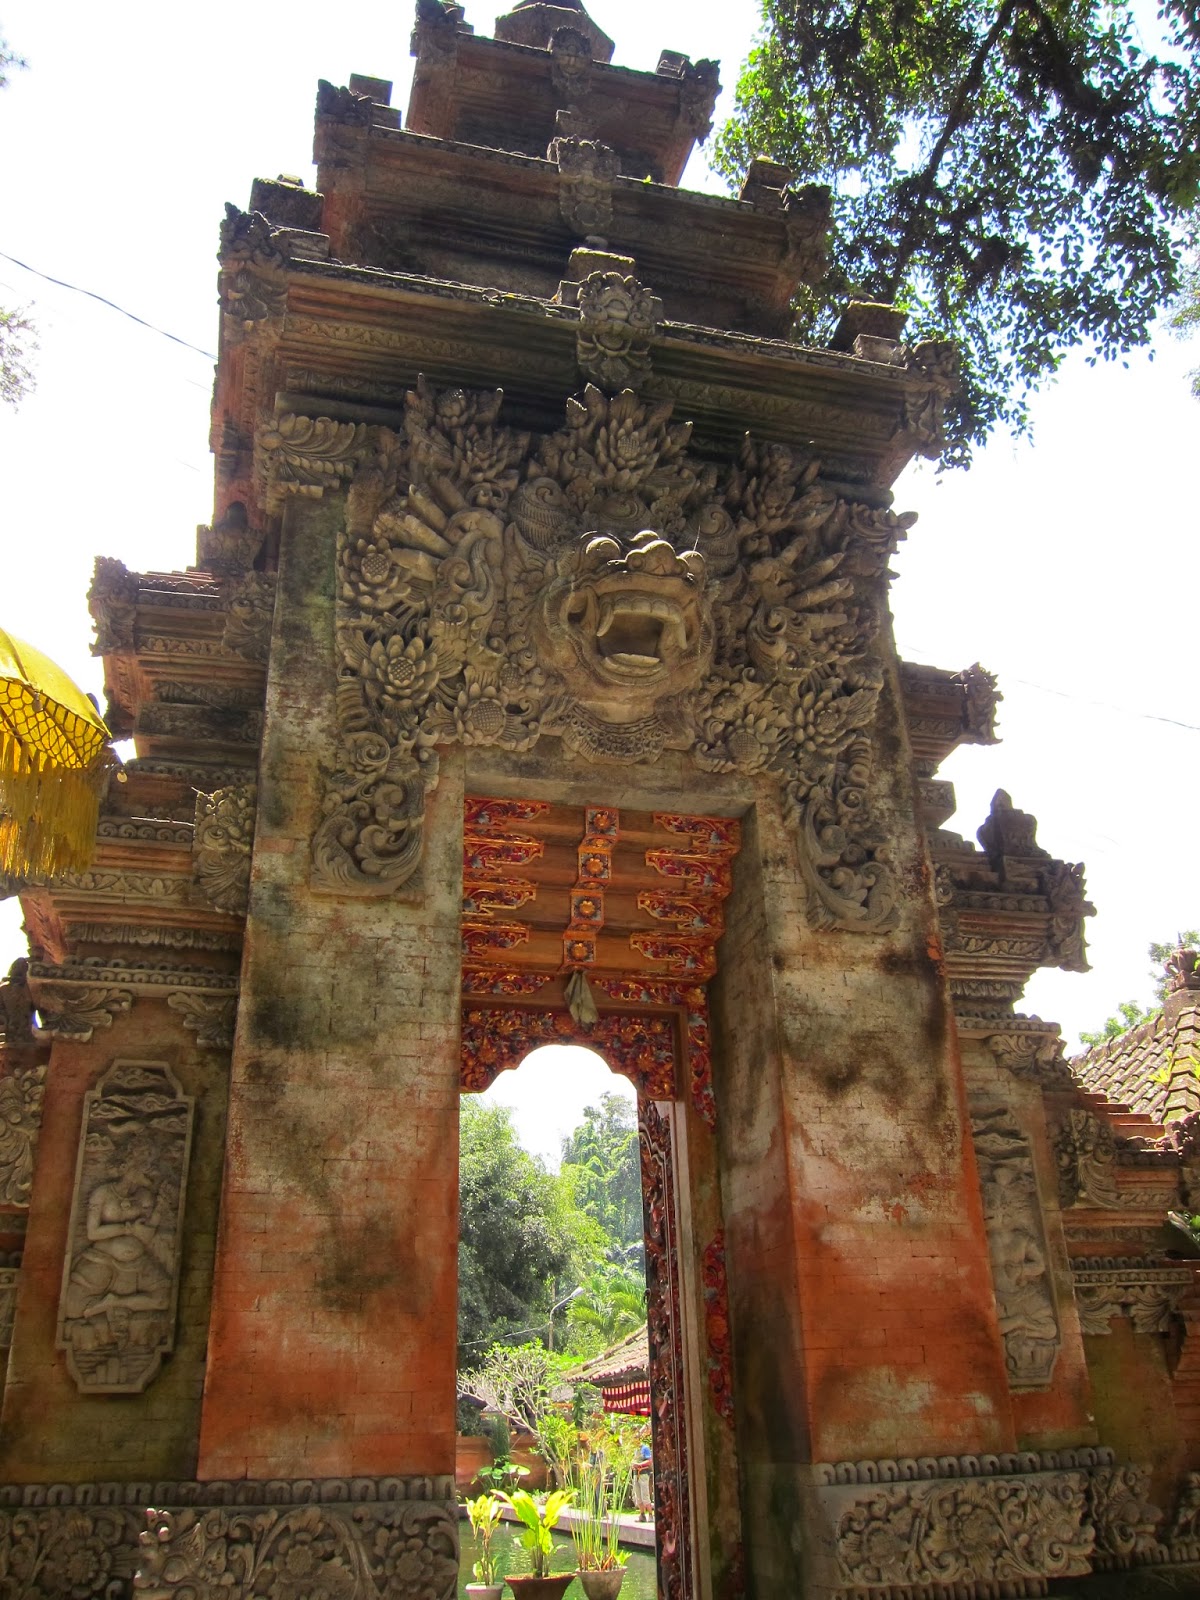 【峇里島自由行】Bali慶生之旅D2(上): 象洞/聖泉寺/Tegallalang/ I Made Joni。造訪烏布古蹟遺址